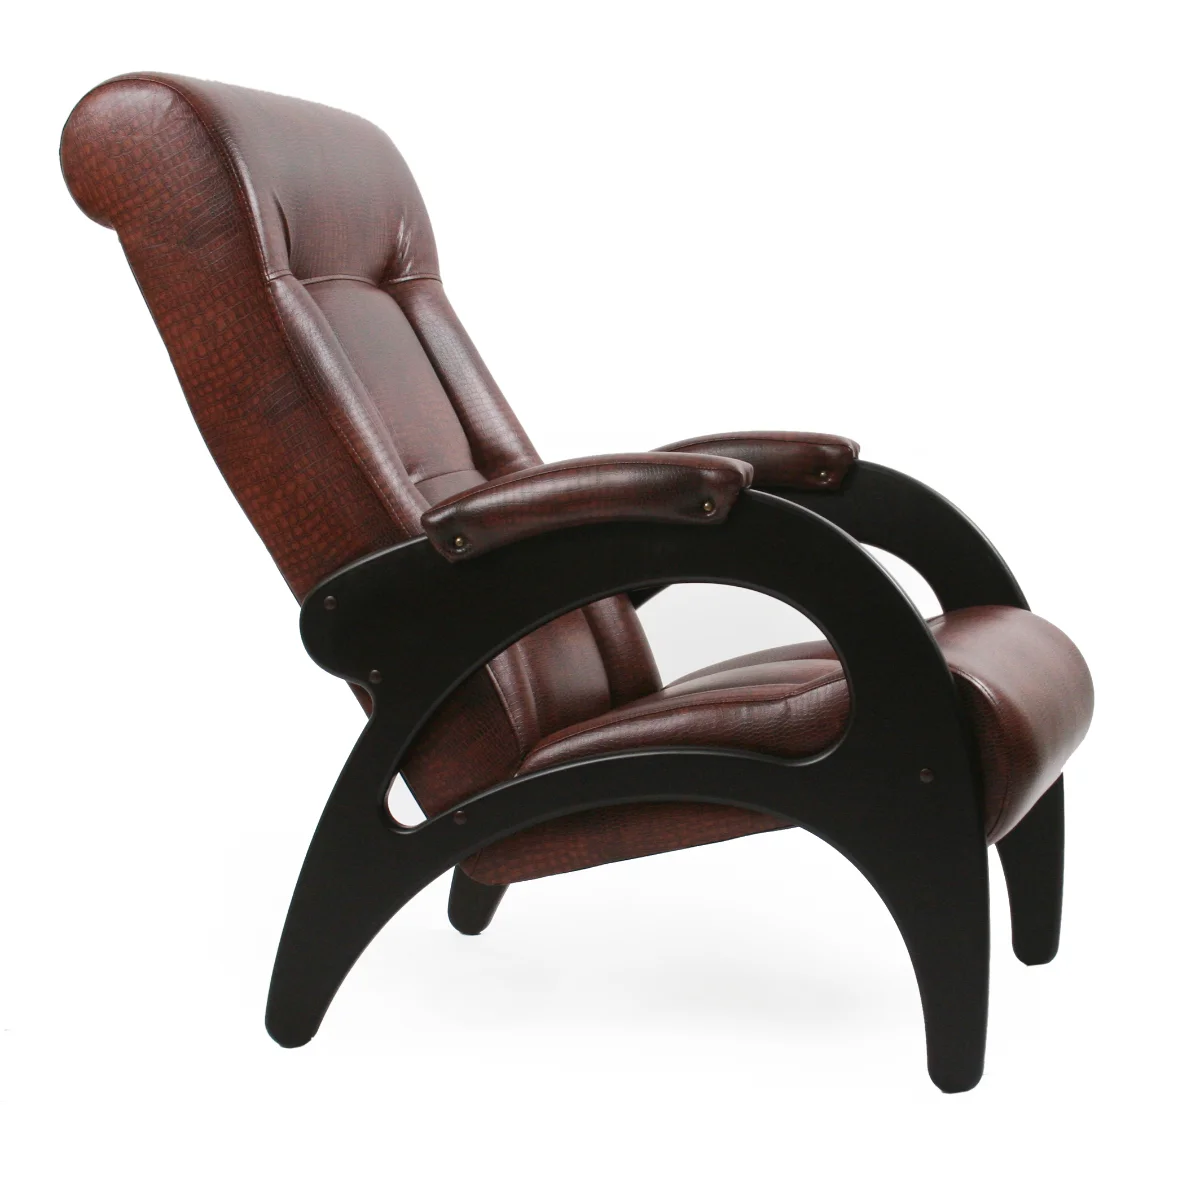 Кресло для отдыха Неаполь Модель 9 без лозы (Орех-эмаль/Экокожа коричневый Антик крокодил)